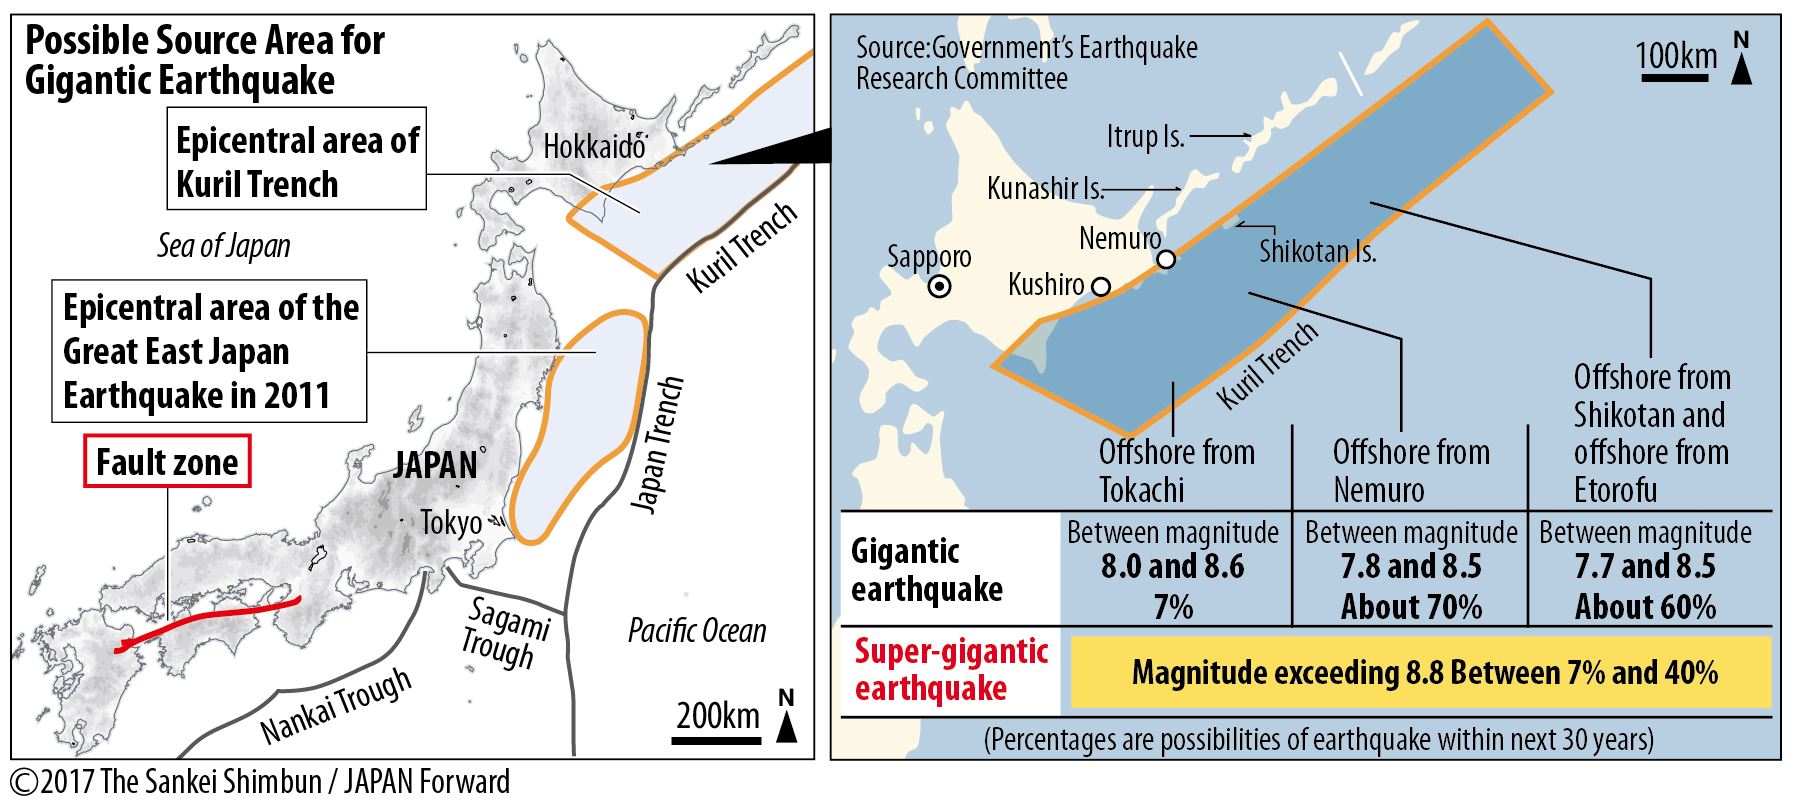 Макет землетрясения. USS Tohoku на карте. Модели землетрясений